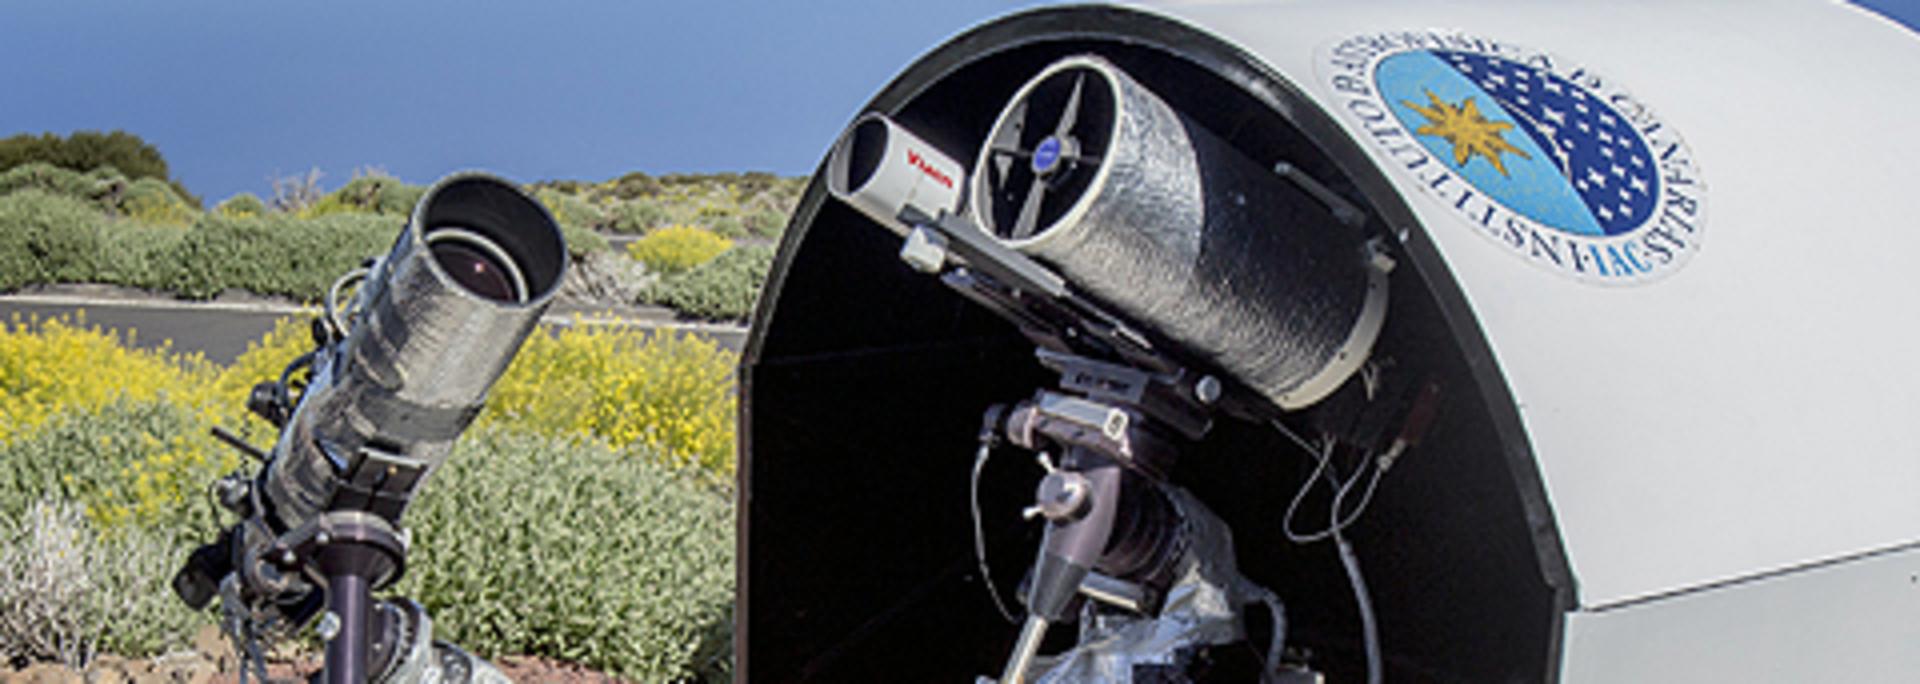 Telescopio Divulgación | Instituto de Astrofísica de Canarias • IAC